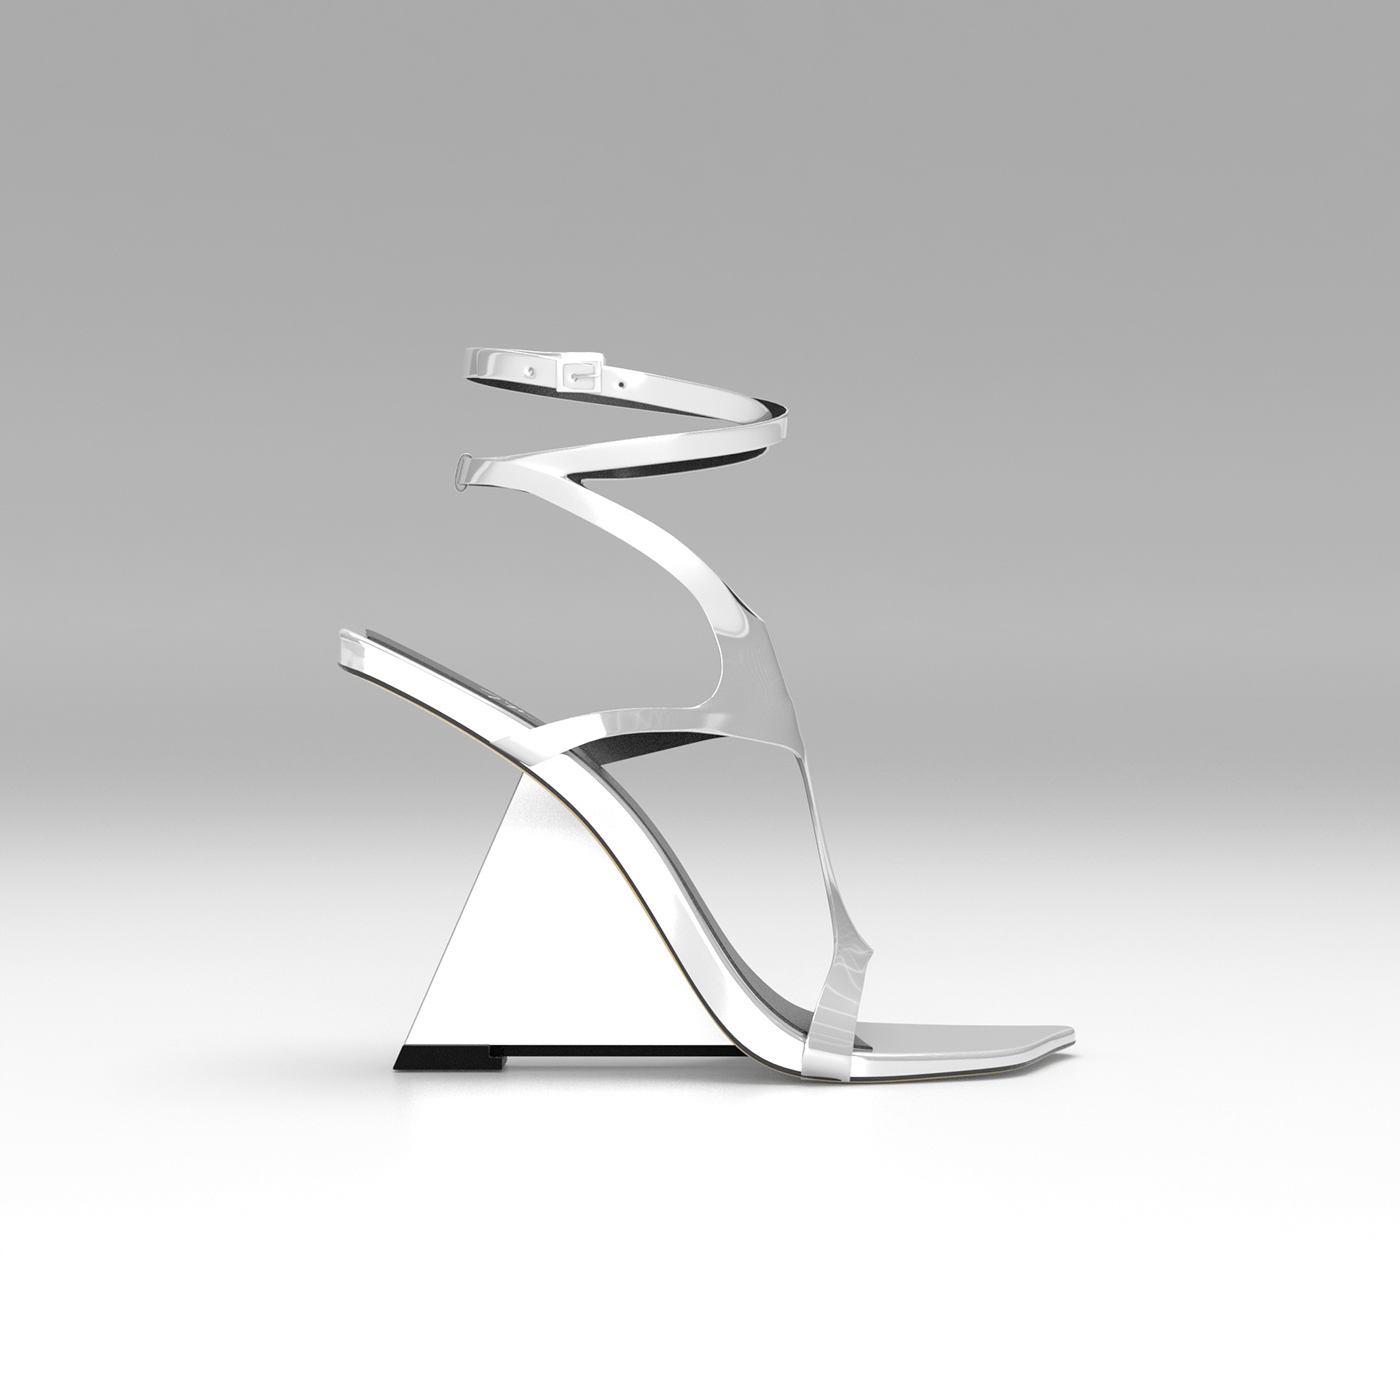 3D 3d footwear 3d modeling 3d product 3D shoes modo product design  shoe design Substance Painter